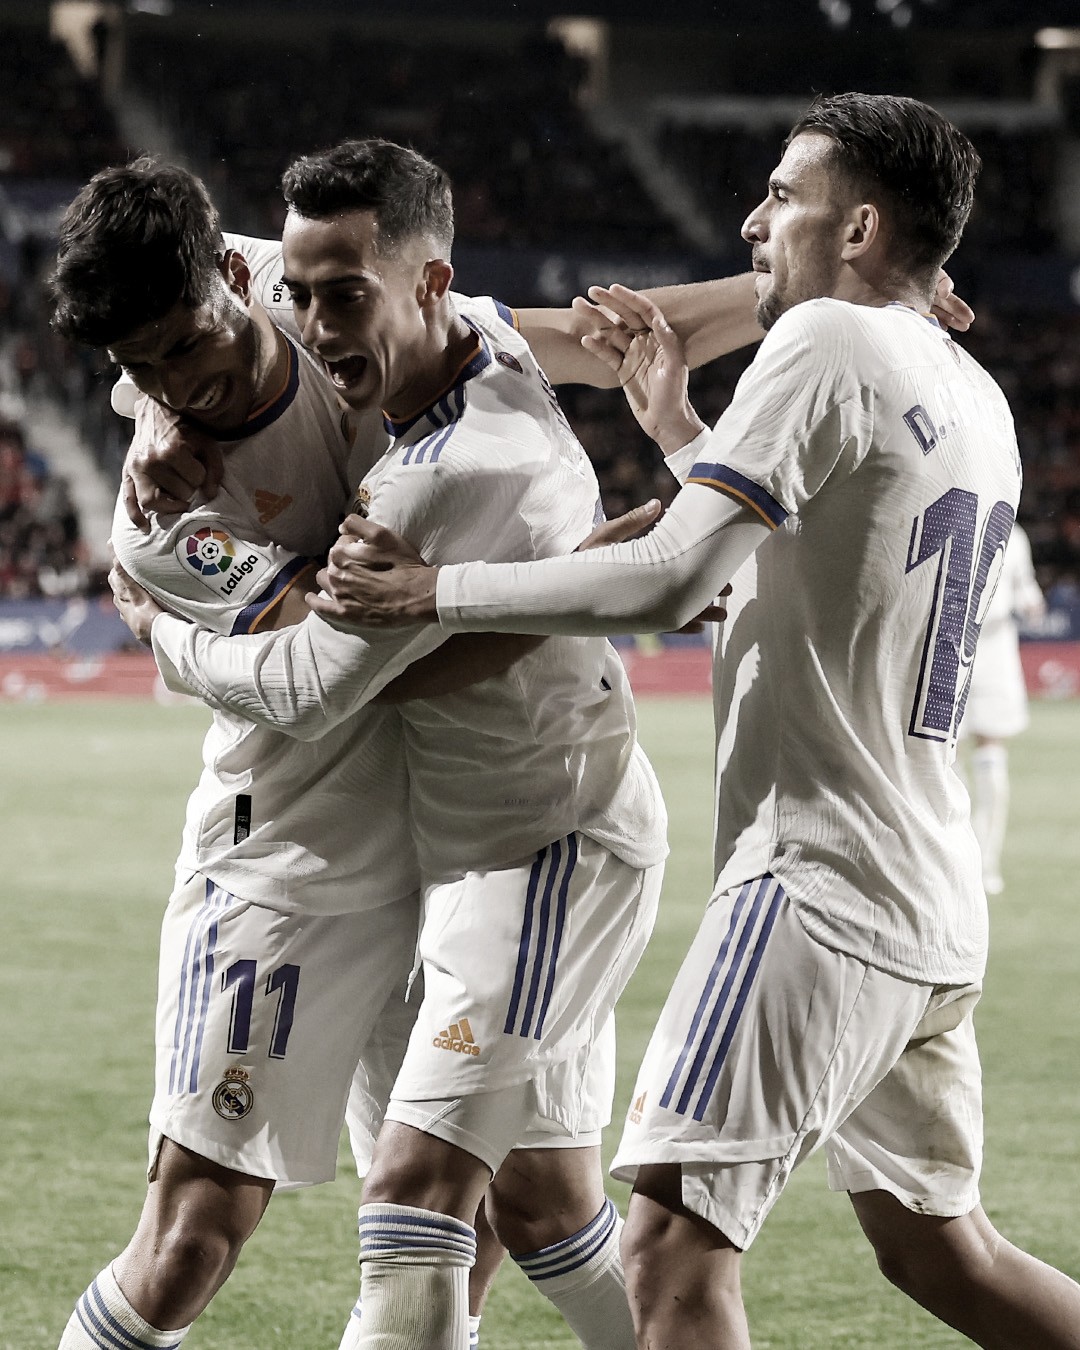 Osasuna vs Real Madrid: puntuaciones de la jornada 33 de LaLiga